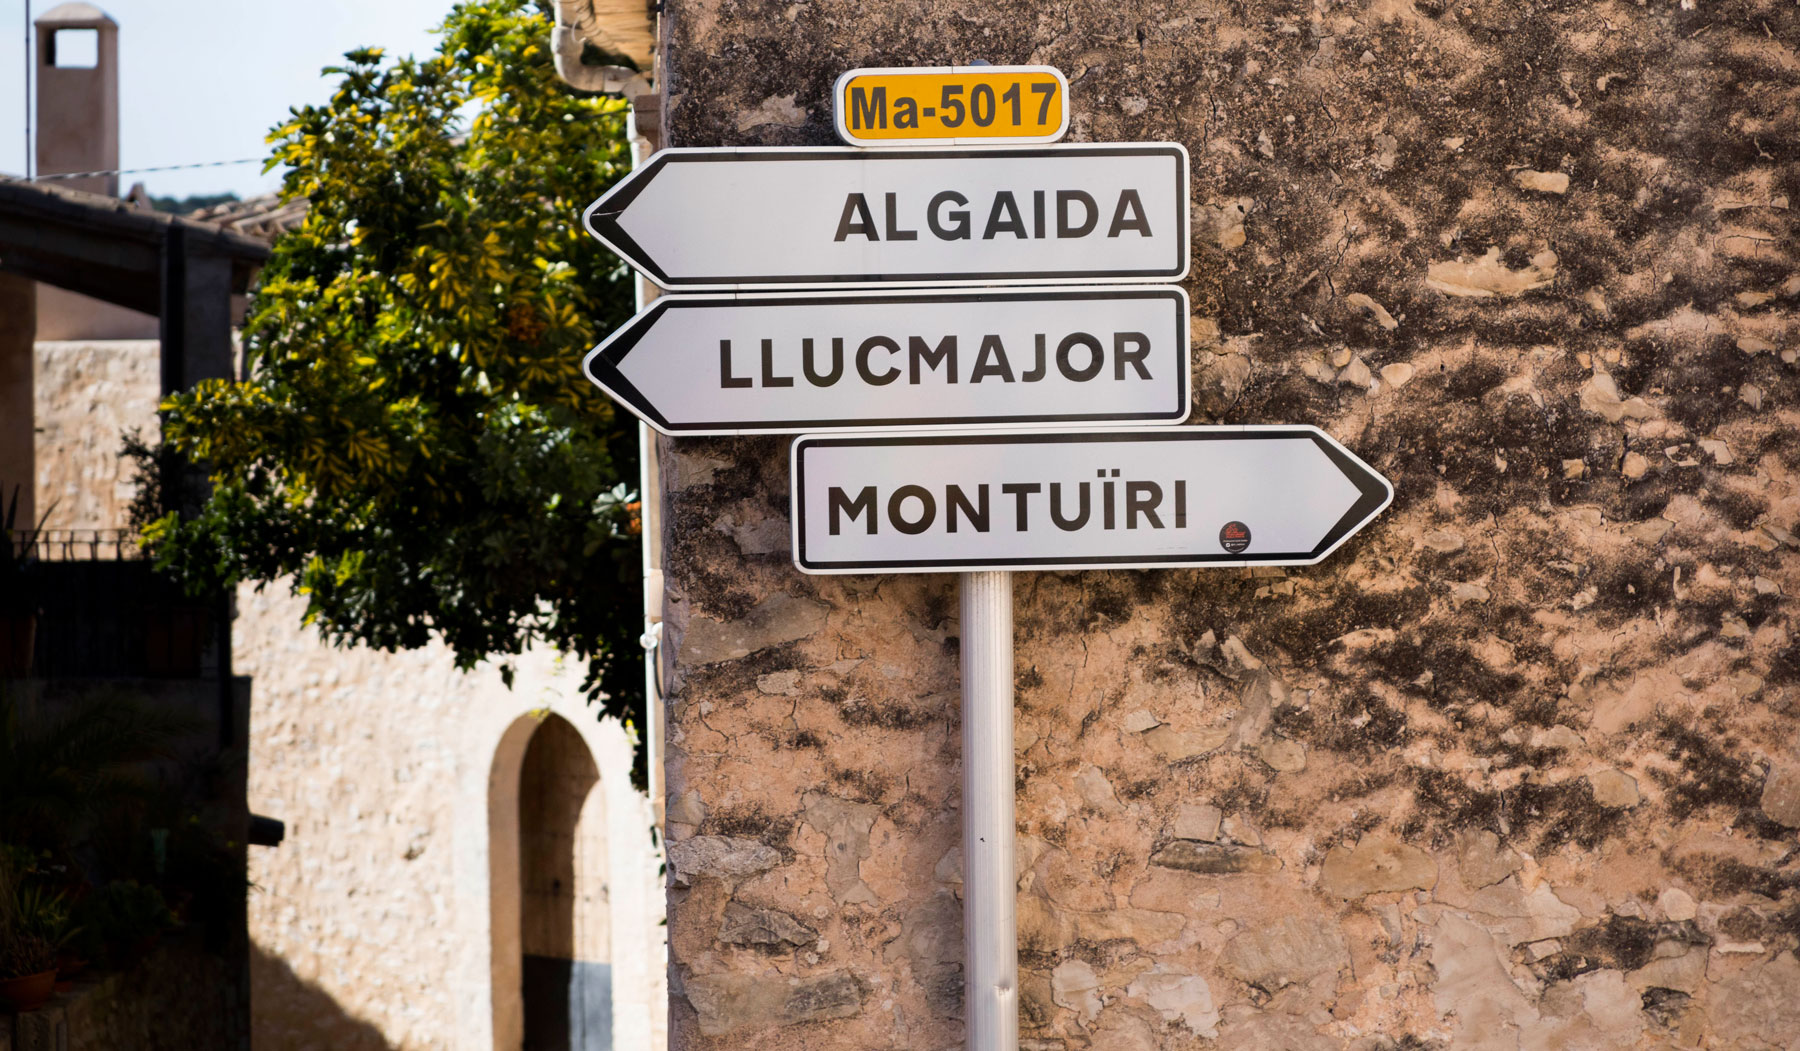 Det er sjelden langt til neste landsby for sykkelryttere på Mallorca.